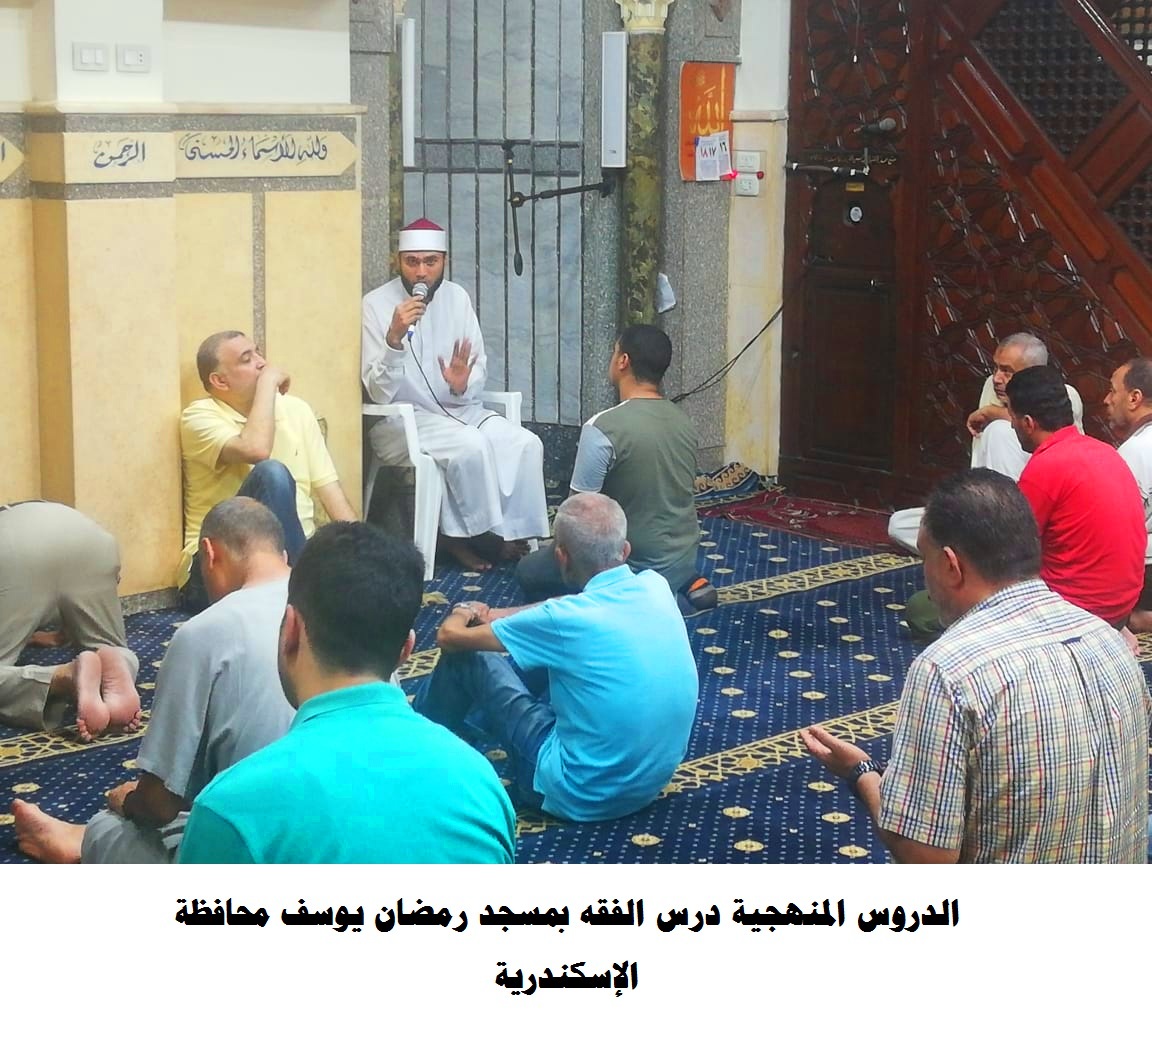 درس الفقه بأحد المساجد في الاسكندرية